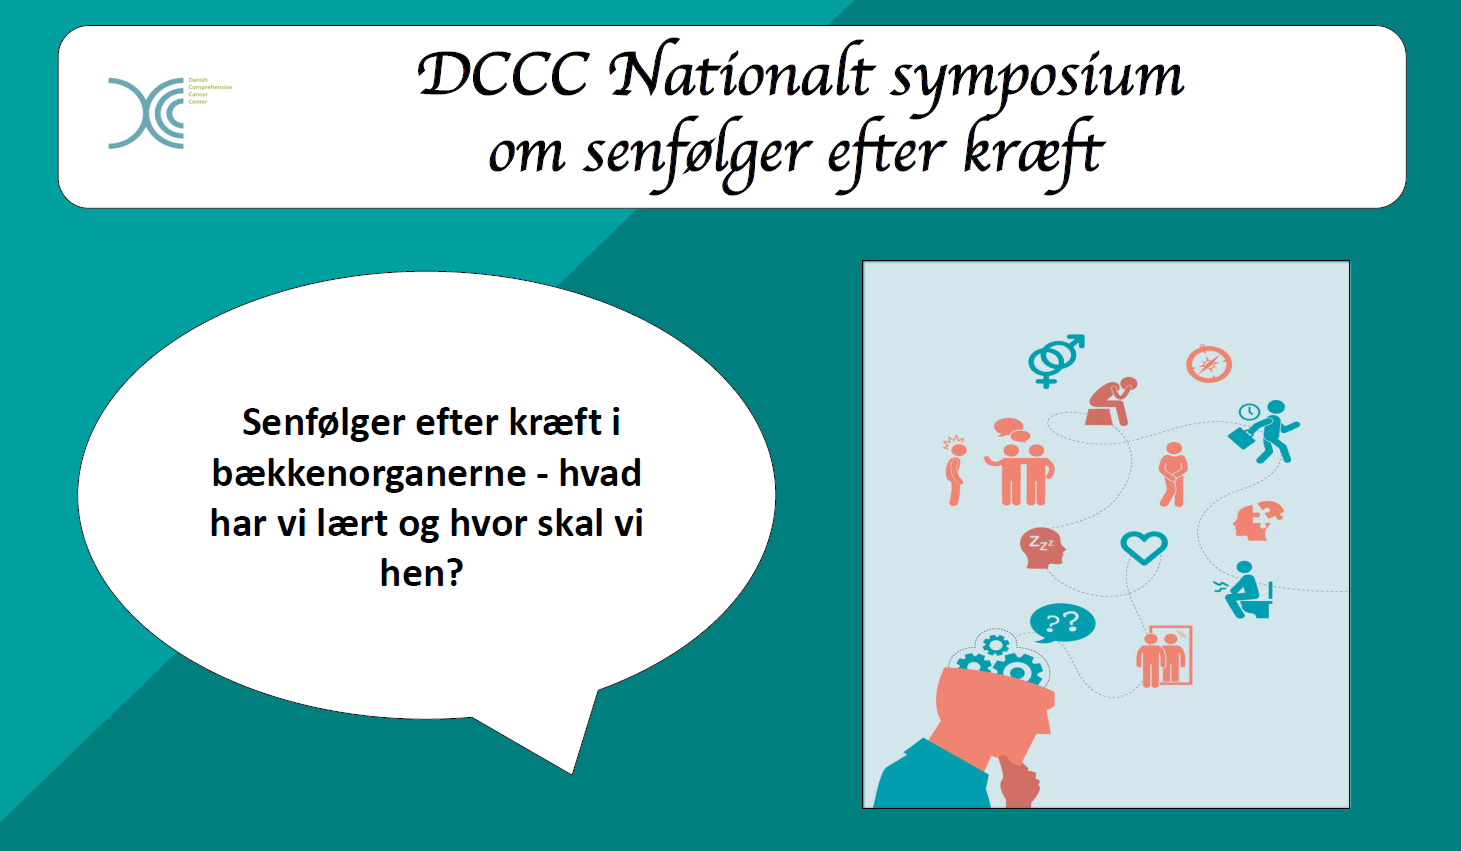 DCCC Nationalt Symposium for Senfølger efter Kræft.png